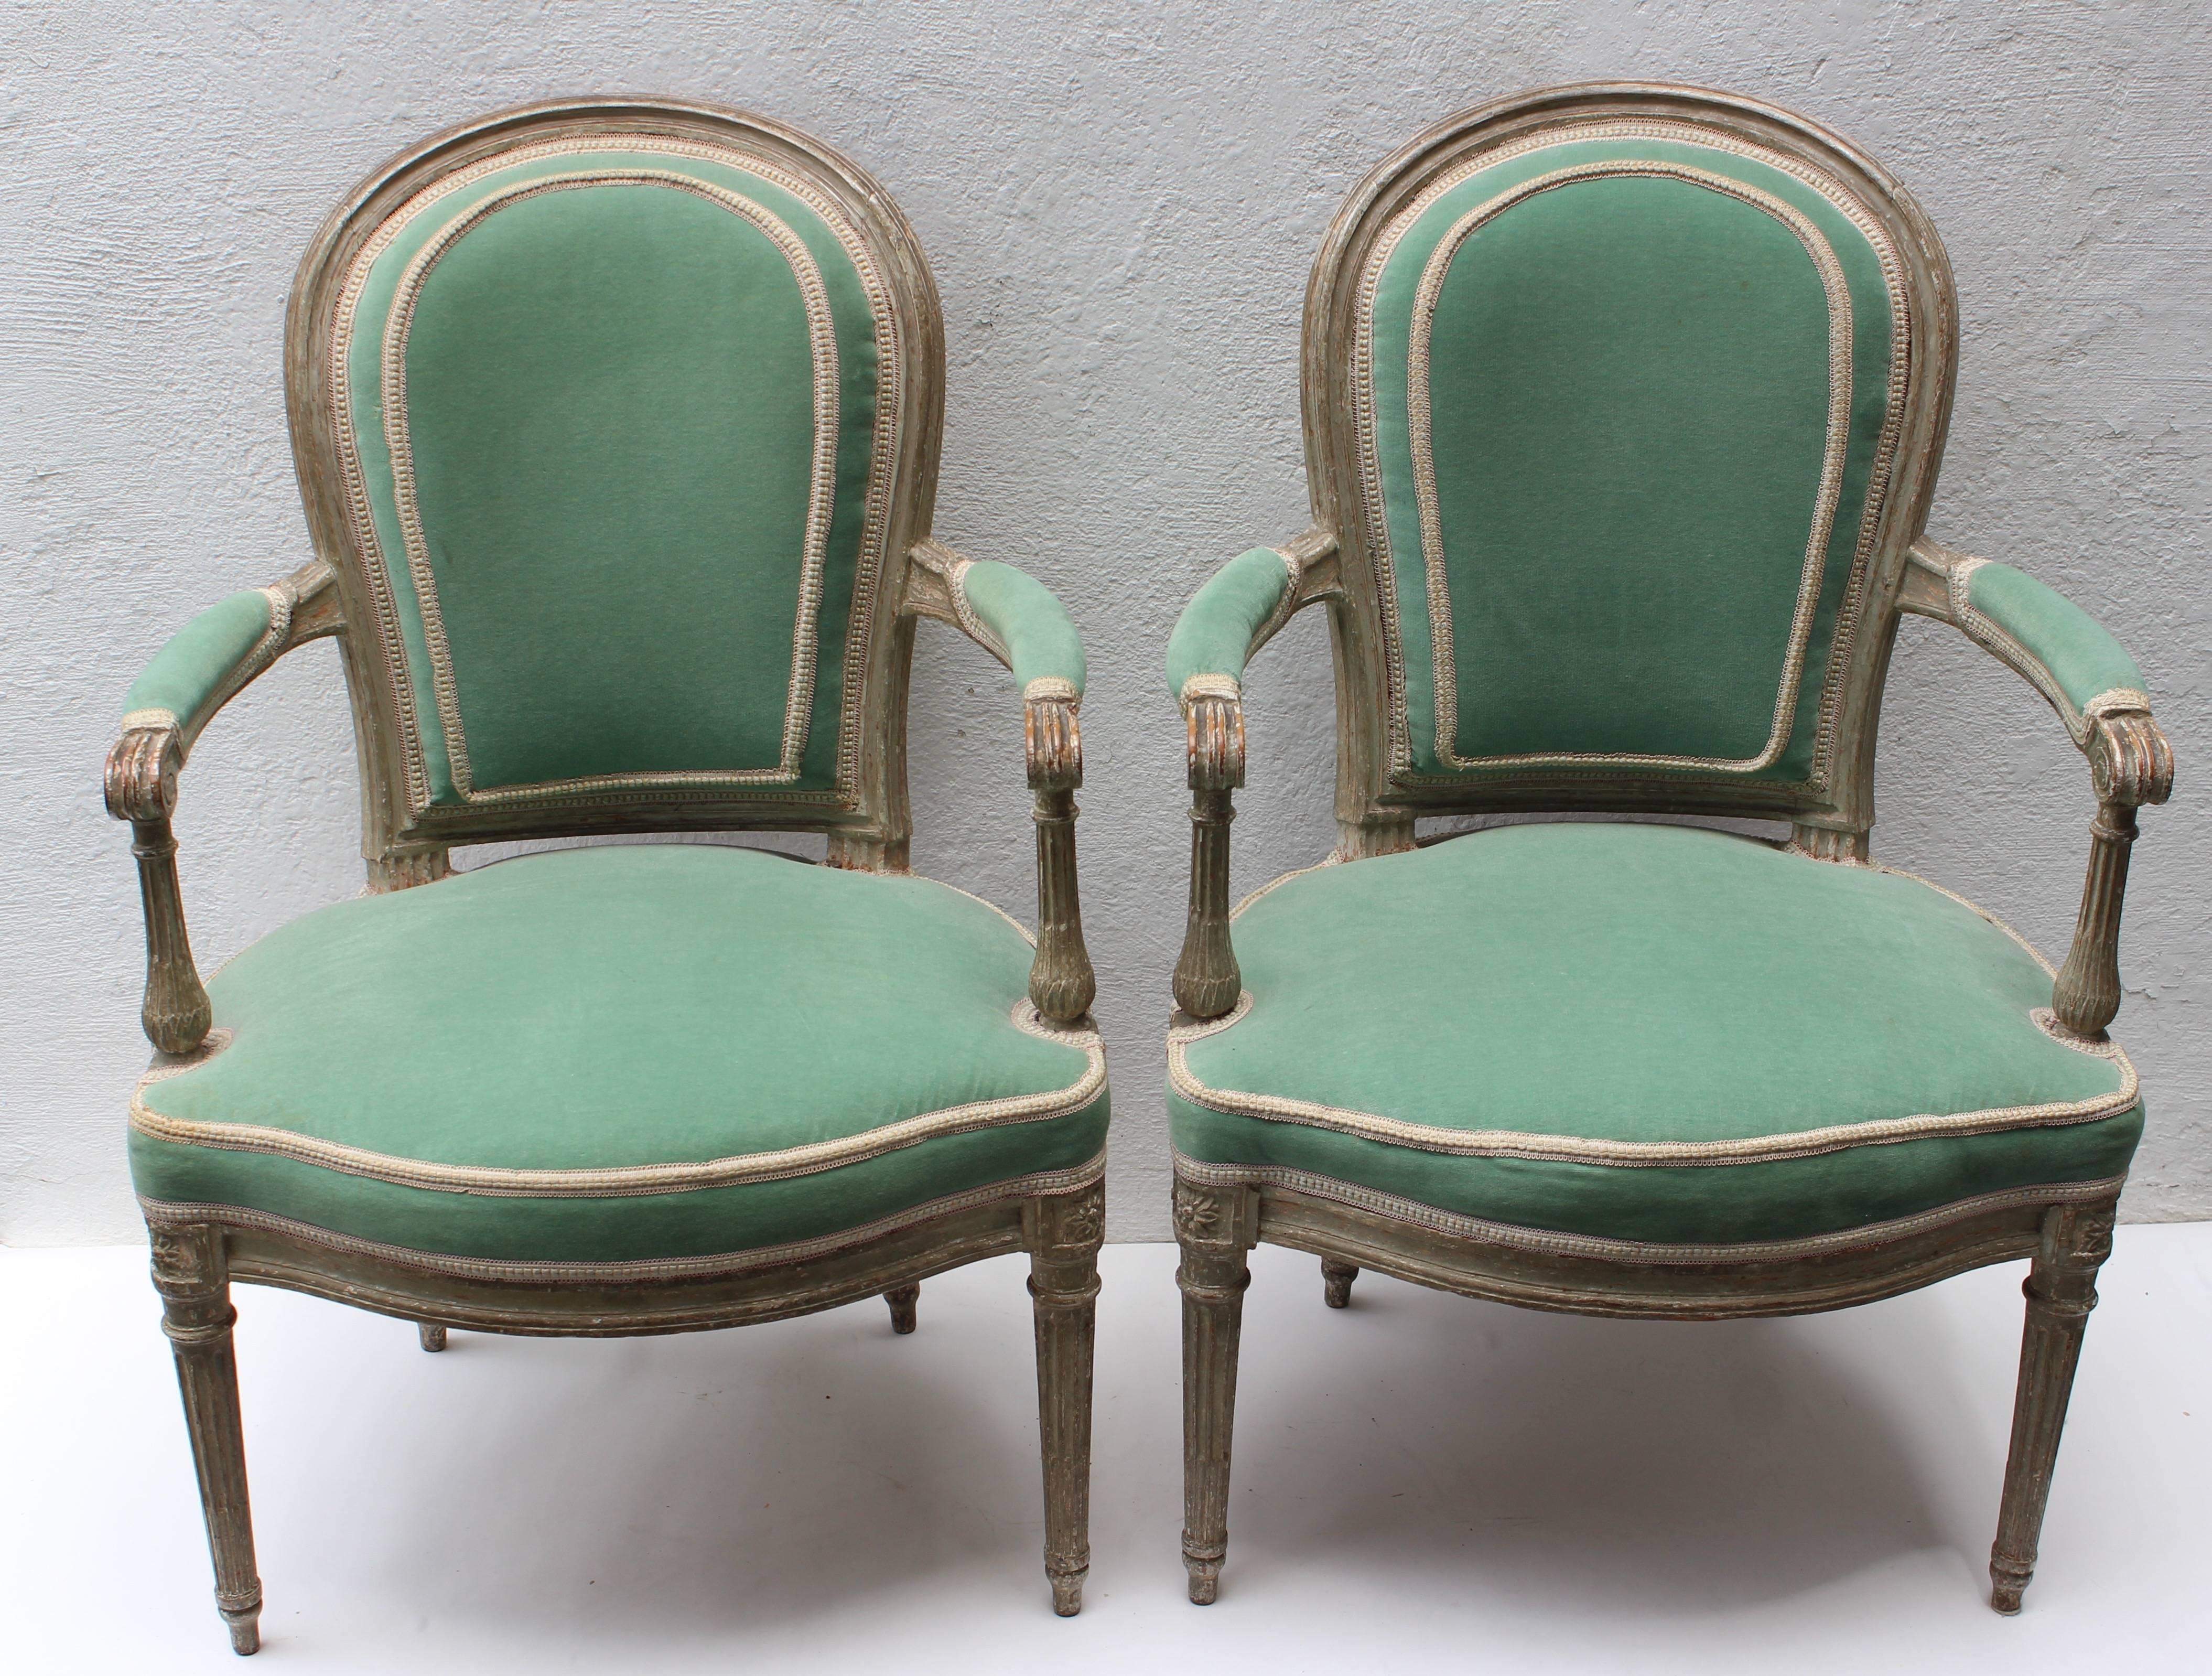 Paire de fauteuils en cabriolet de style Louis XVI peints en blanc attribués à Georges Jacob (1739-1814) vers 1780.

Avec un dossier rond mouluré de canaux, des bras droits à volutes avec manchettes au-dessus d'un siège en forme de U serpentin, la